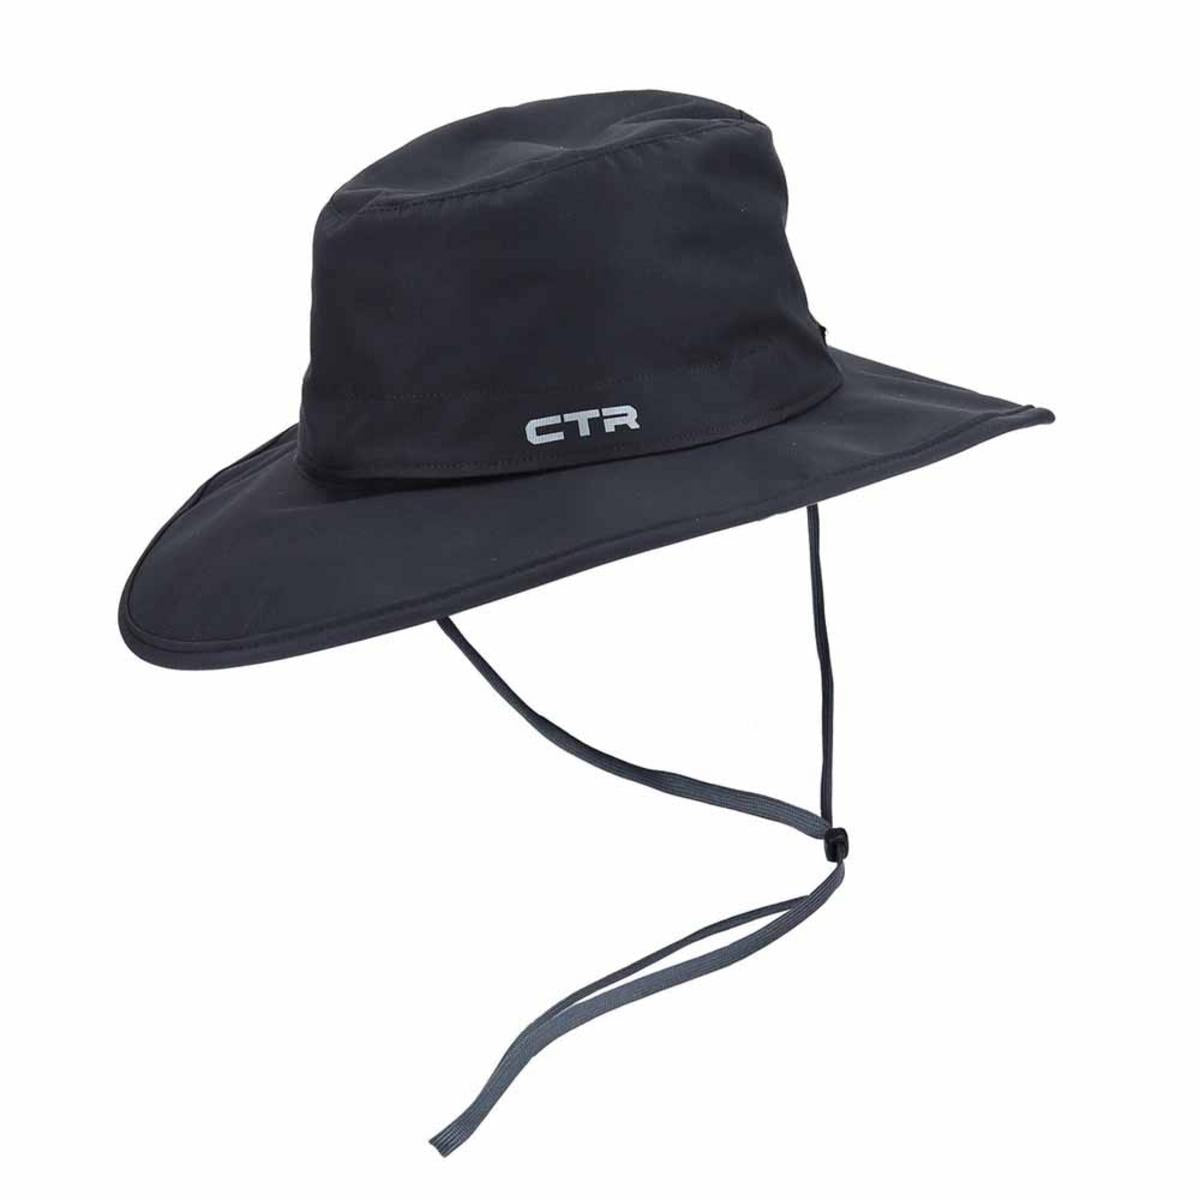 CTR by Chaos Stratus Nimbus Sombrero Hat